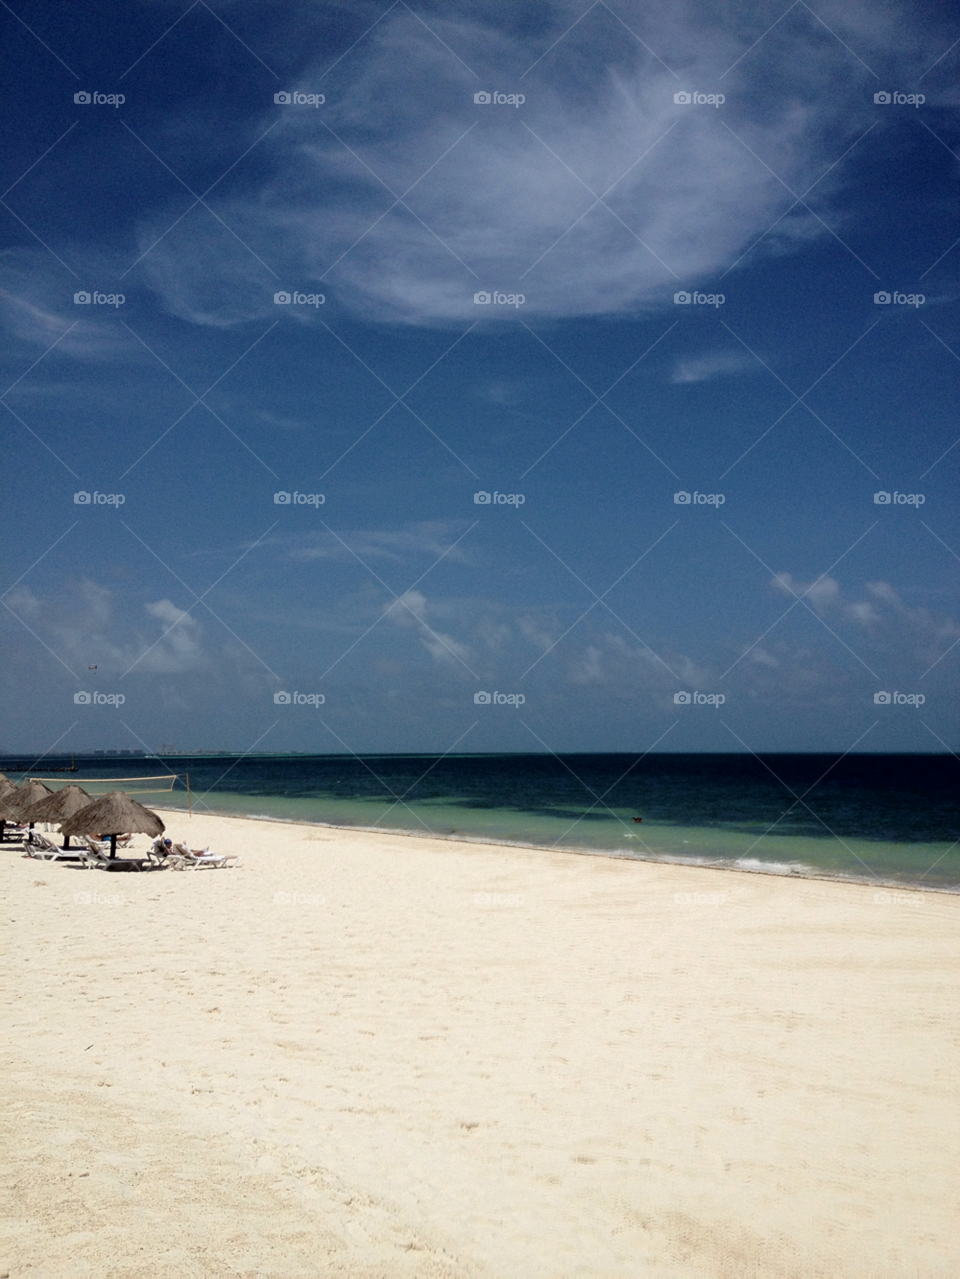 mexico beach paradise by akofthebige